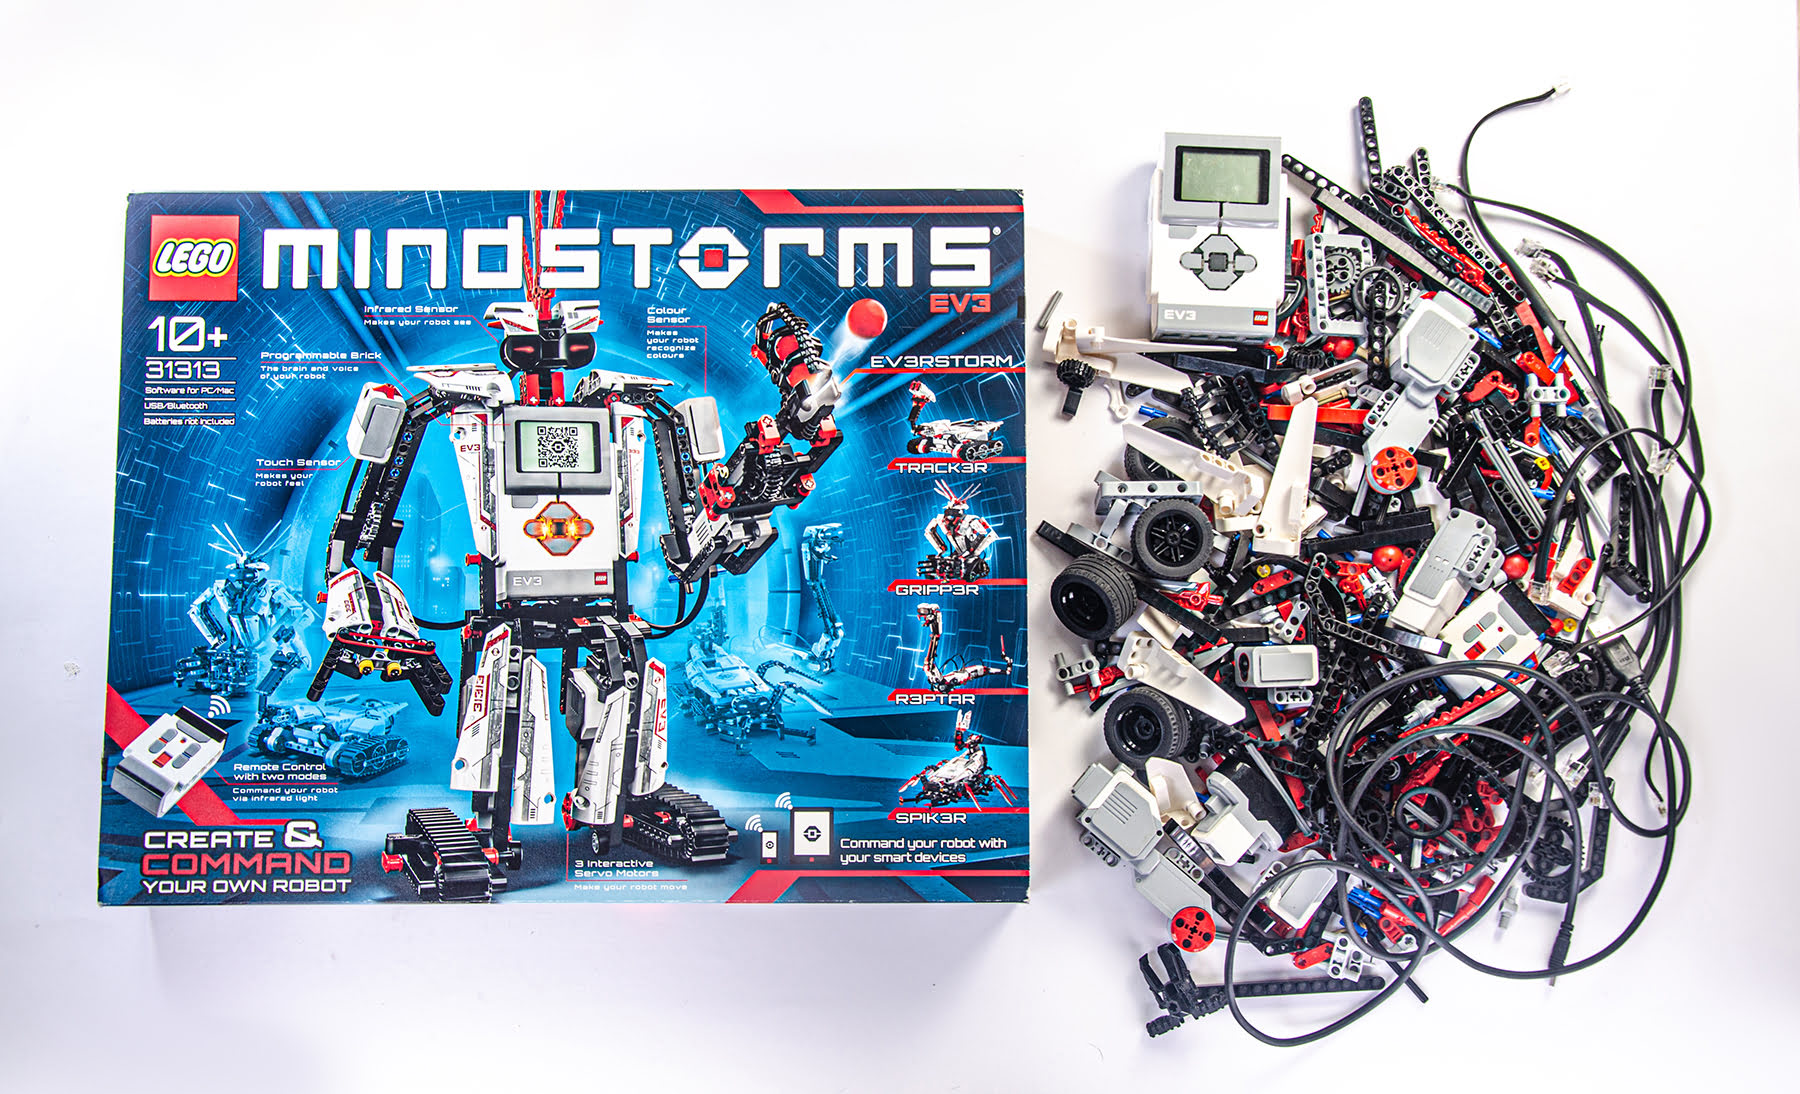 LEGO Mindstorms EV3 Home Box